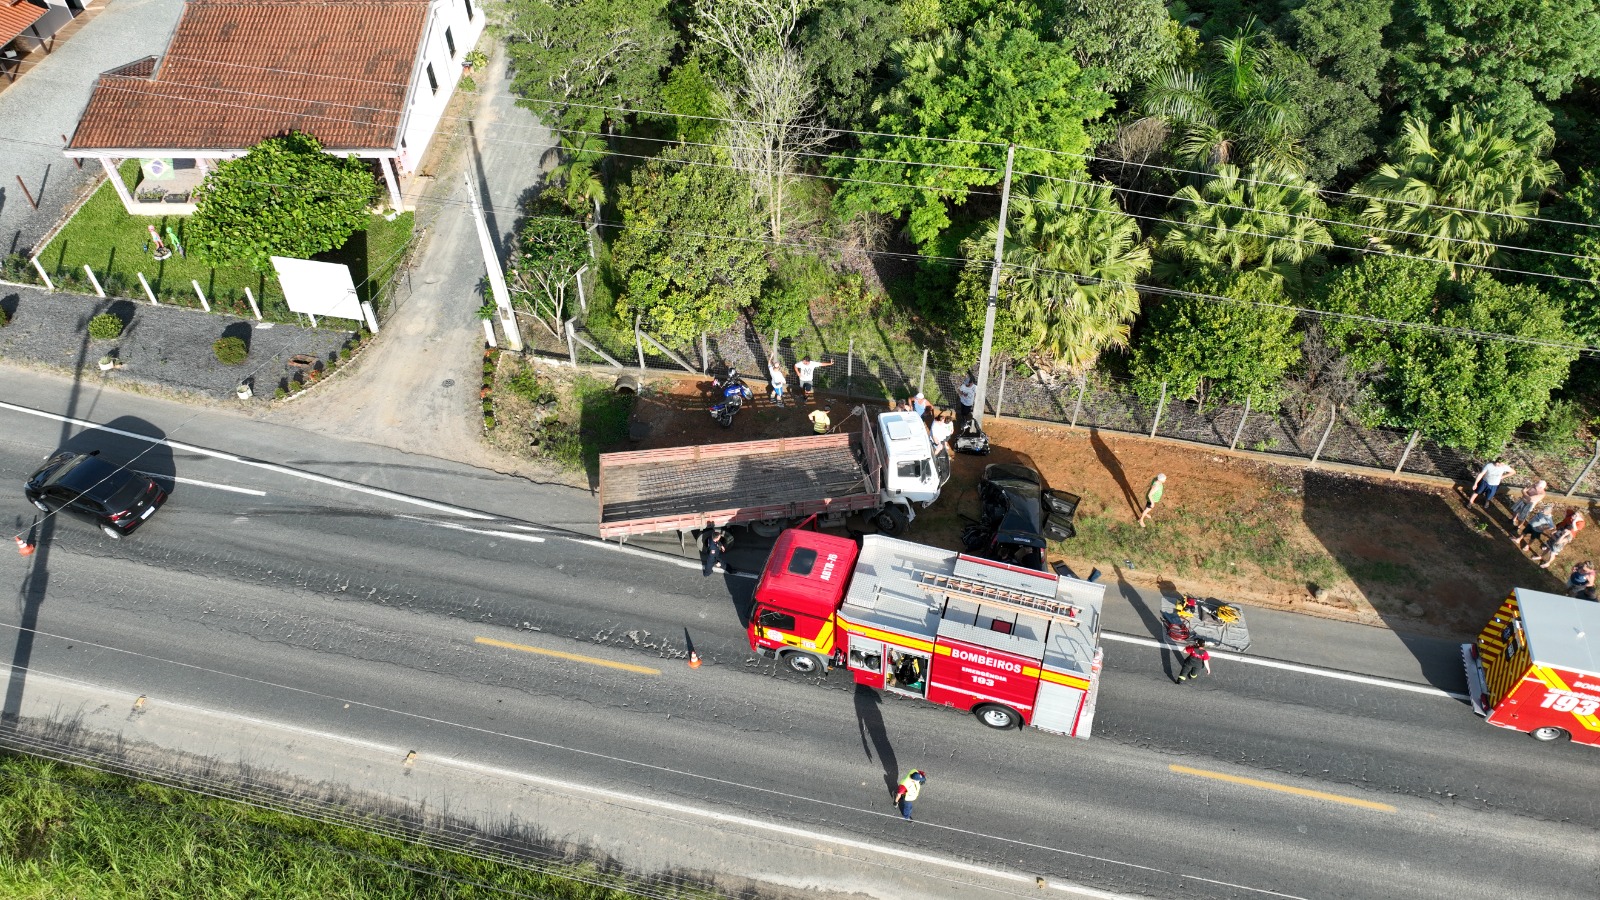 Mulher fica presa às ferragens de carro após acidente com caminhão e van,  em Redenção, Ceará